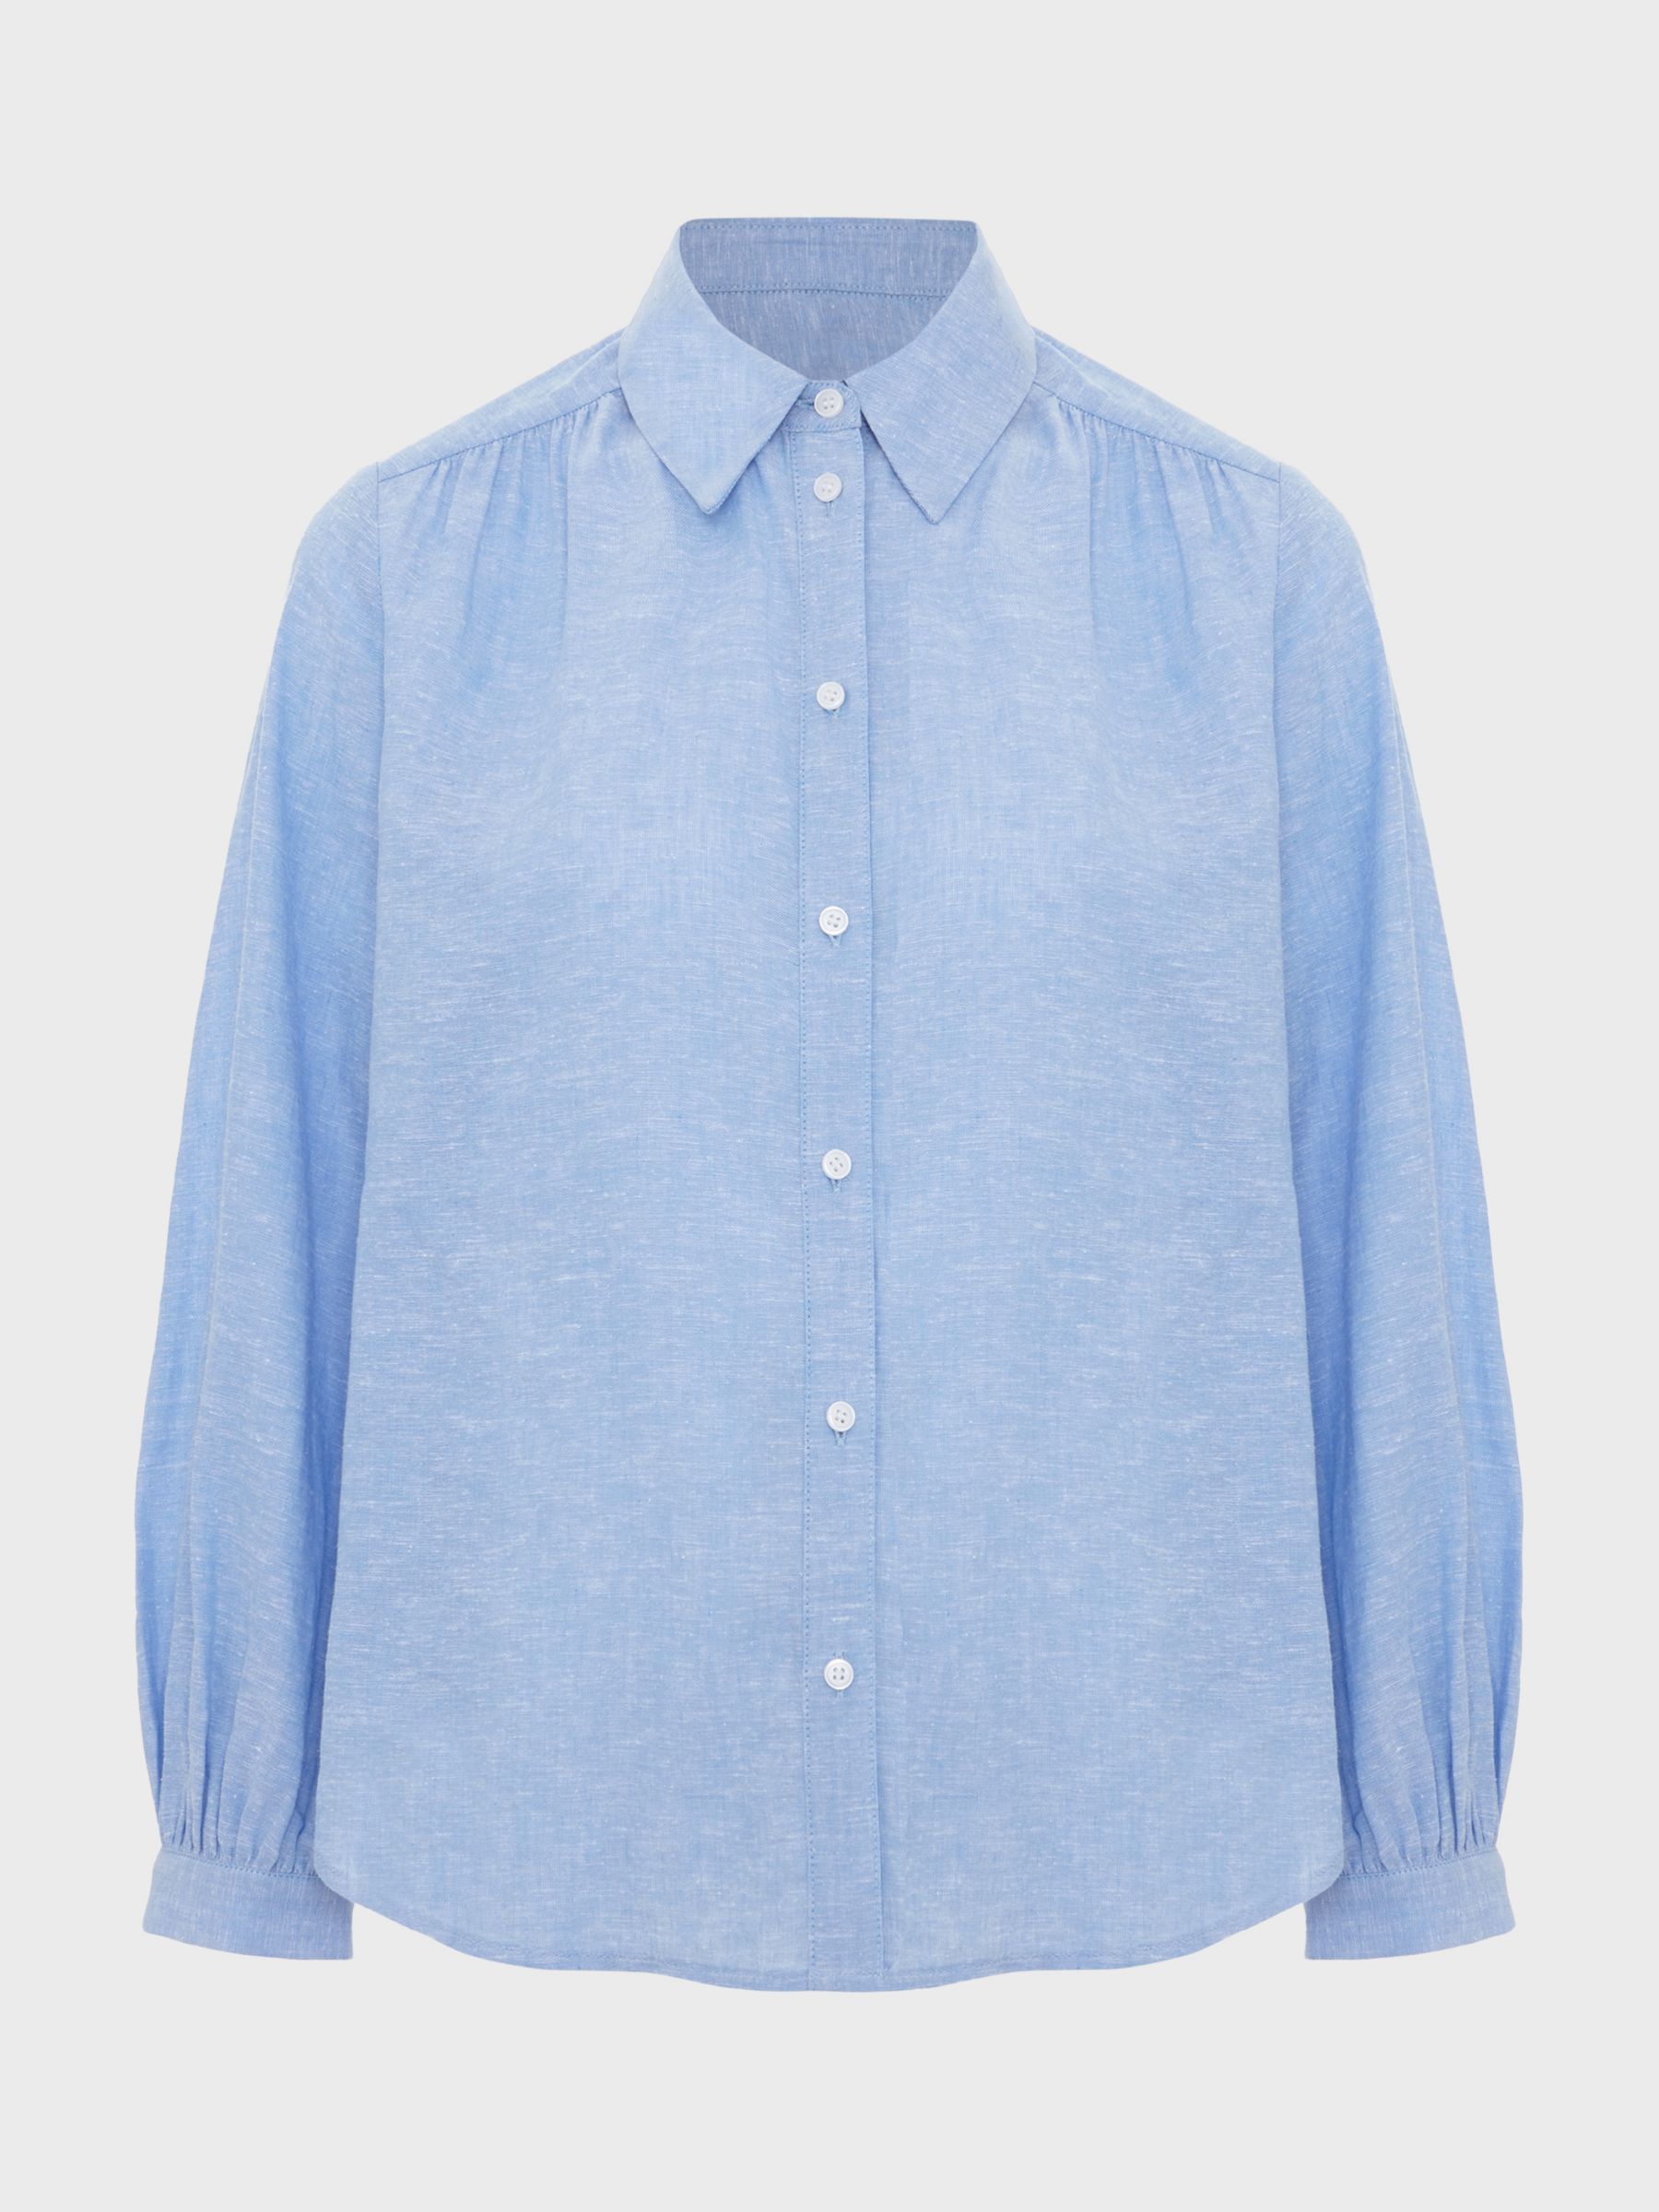 Hobbs Sabrina Linen Blend Shirt, Blue, 10